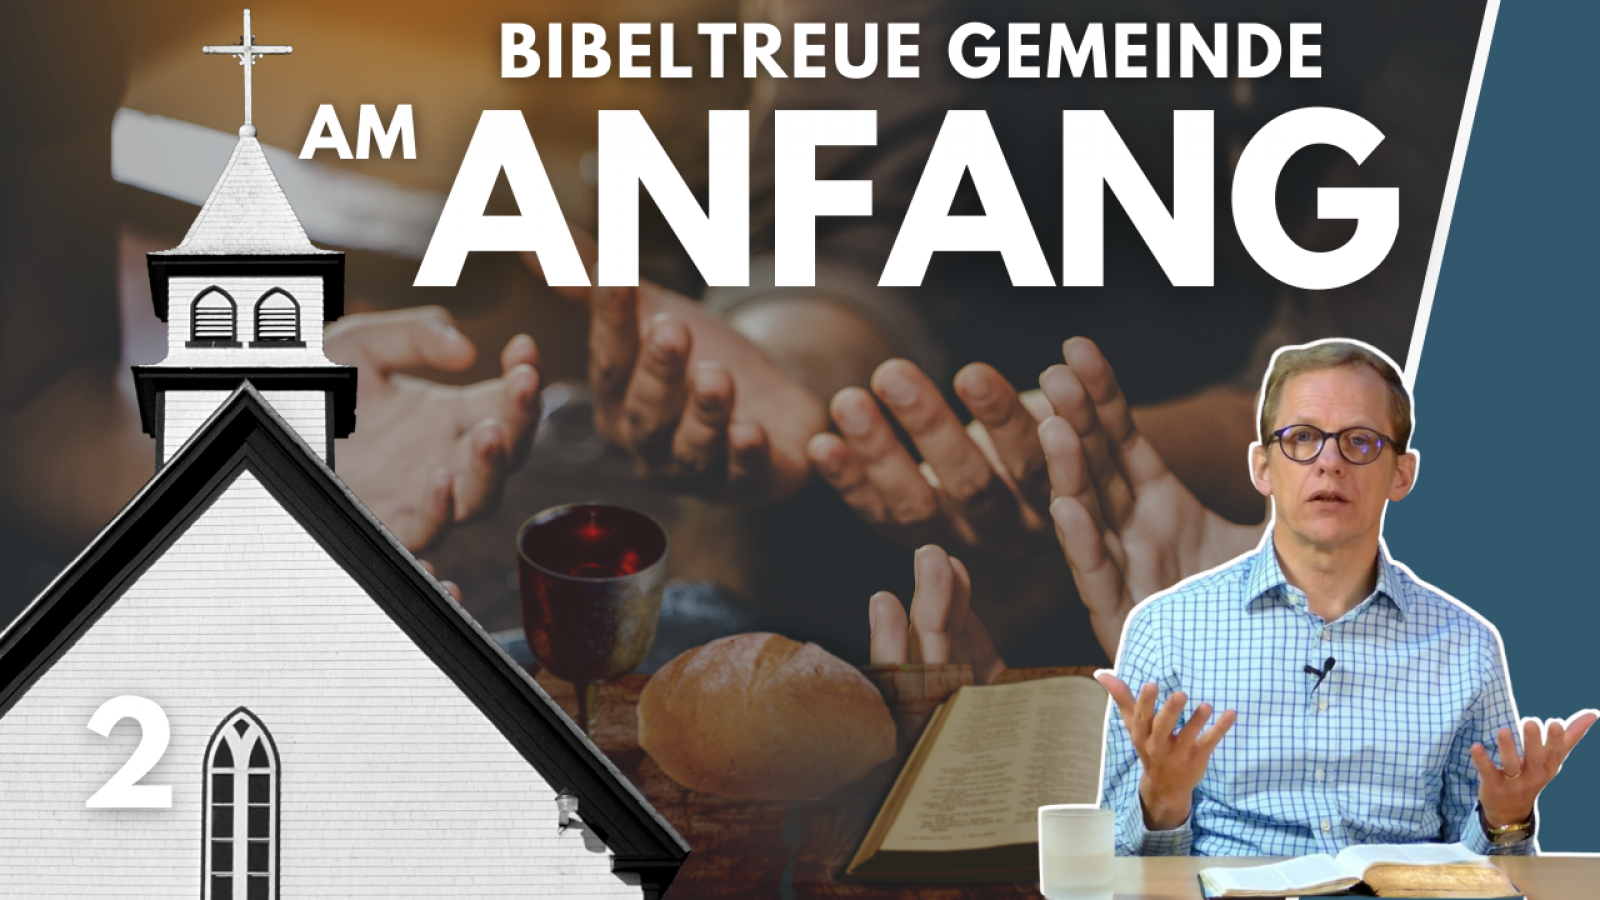 Bibeltreue Gemeinde - damals (Versammlung/Gemeinde/Kirche - Teil 2)